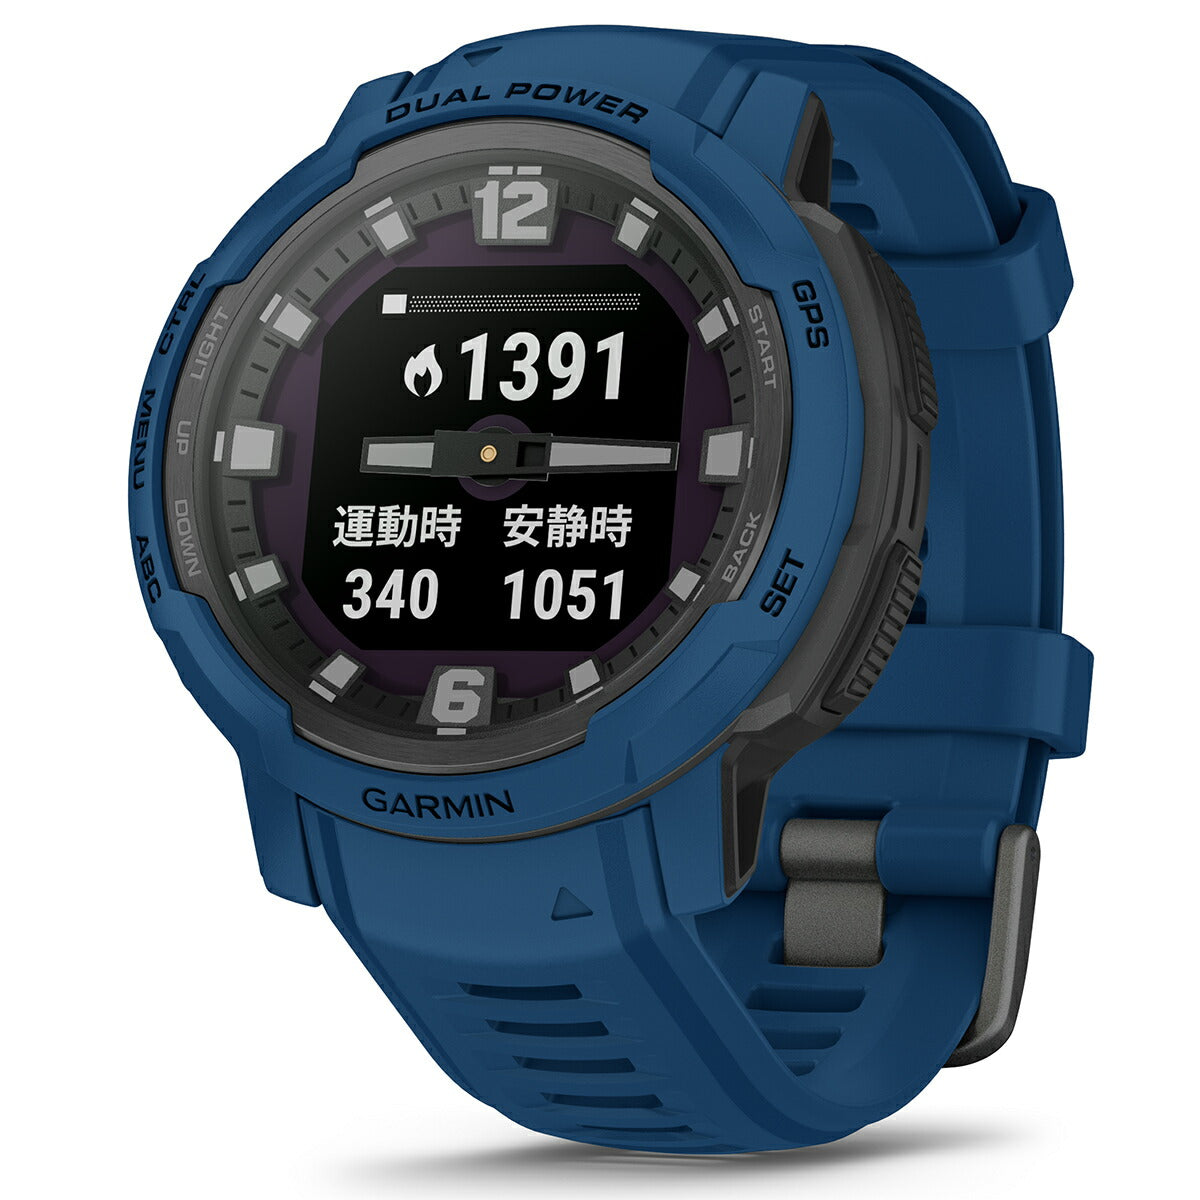 【24回分割手数料無料！】ガーミン GARMIN Instinct Crossover インスティンクト クロスオーバー デュアルパワー 010-02730-42 Dual Power Tidal Blue GPS スマートウォッチ アウトドア 腕時計